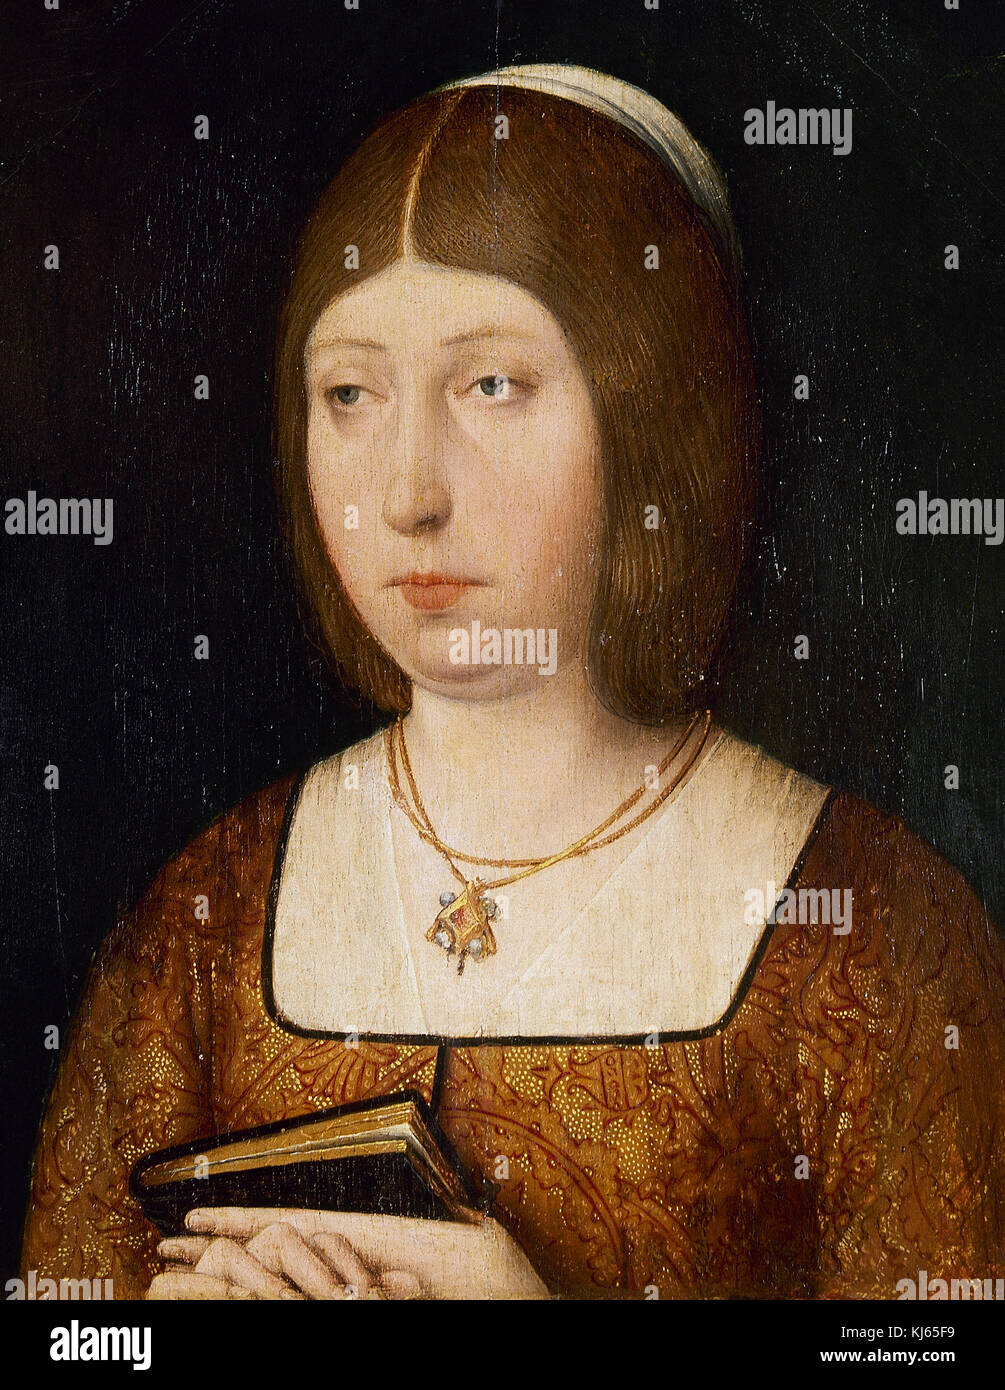 Isabelle I de Castille (1451-1504). Reine de Castille à partir de 1474-1504 et de la Reine consort de l'Aragon. Portrait. Anonimous. Huile sur carton. Musée du Prado. Madrid. L'Espagne. Banque D'Images